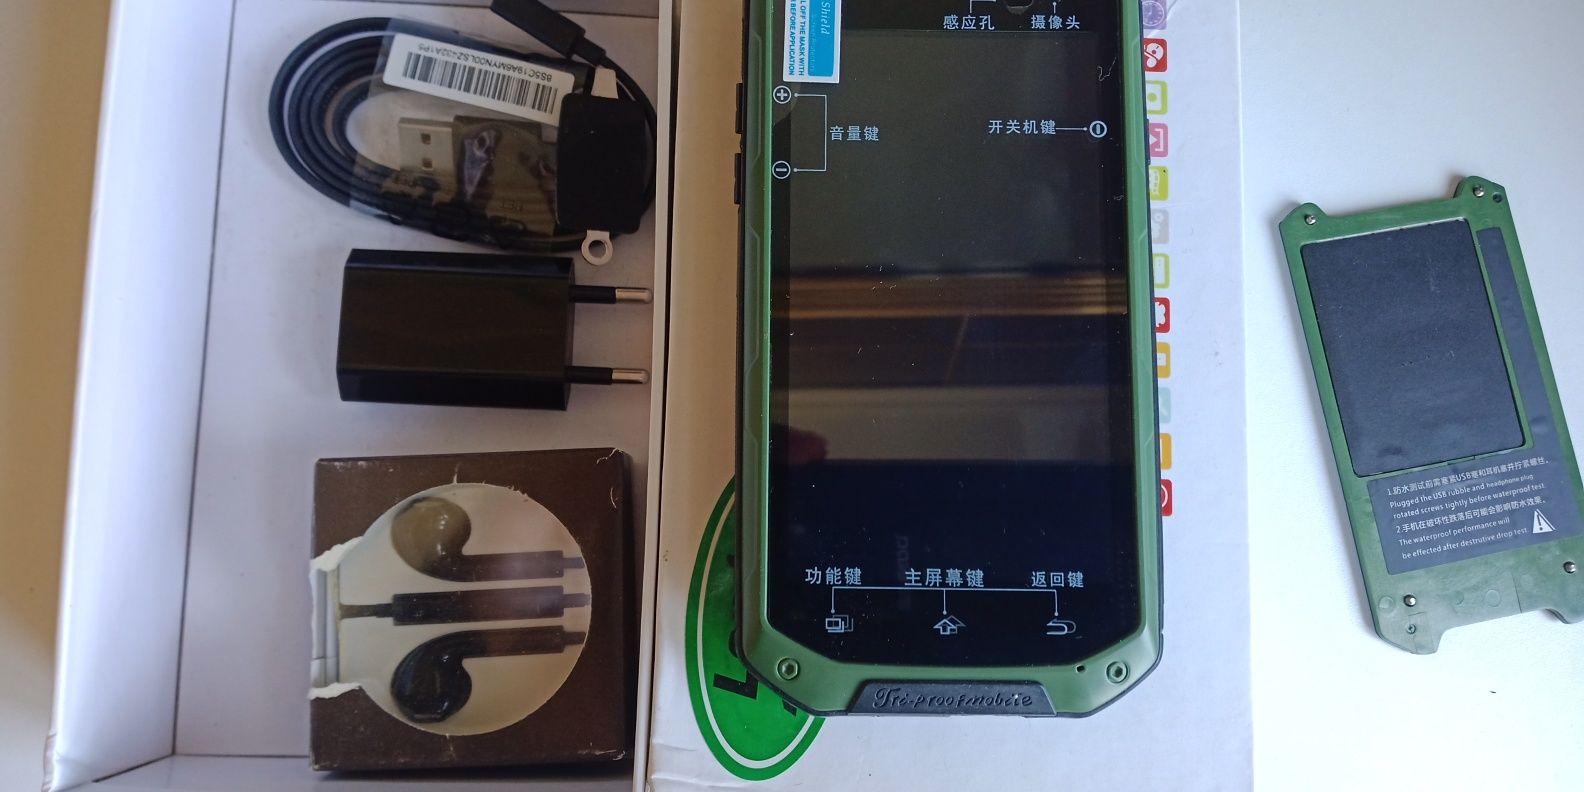 Мобильный телефон противоударный на 2 сим карты